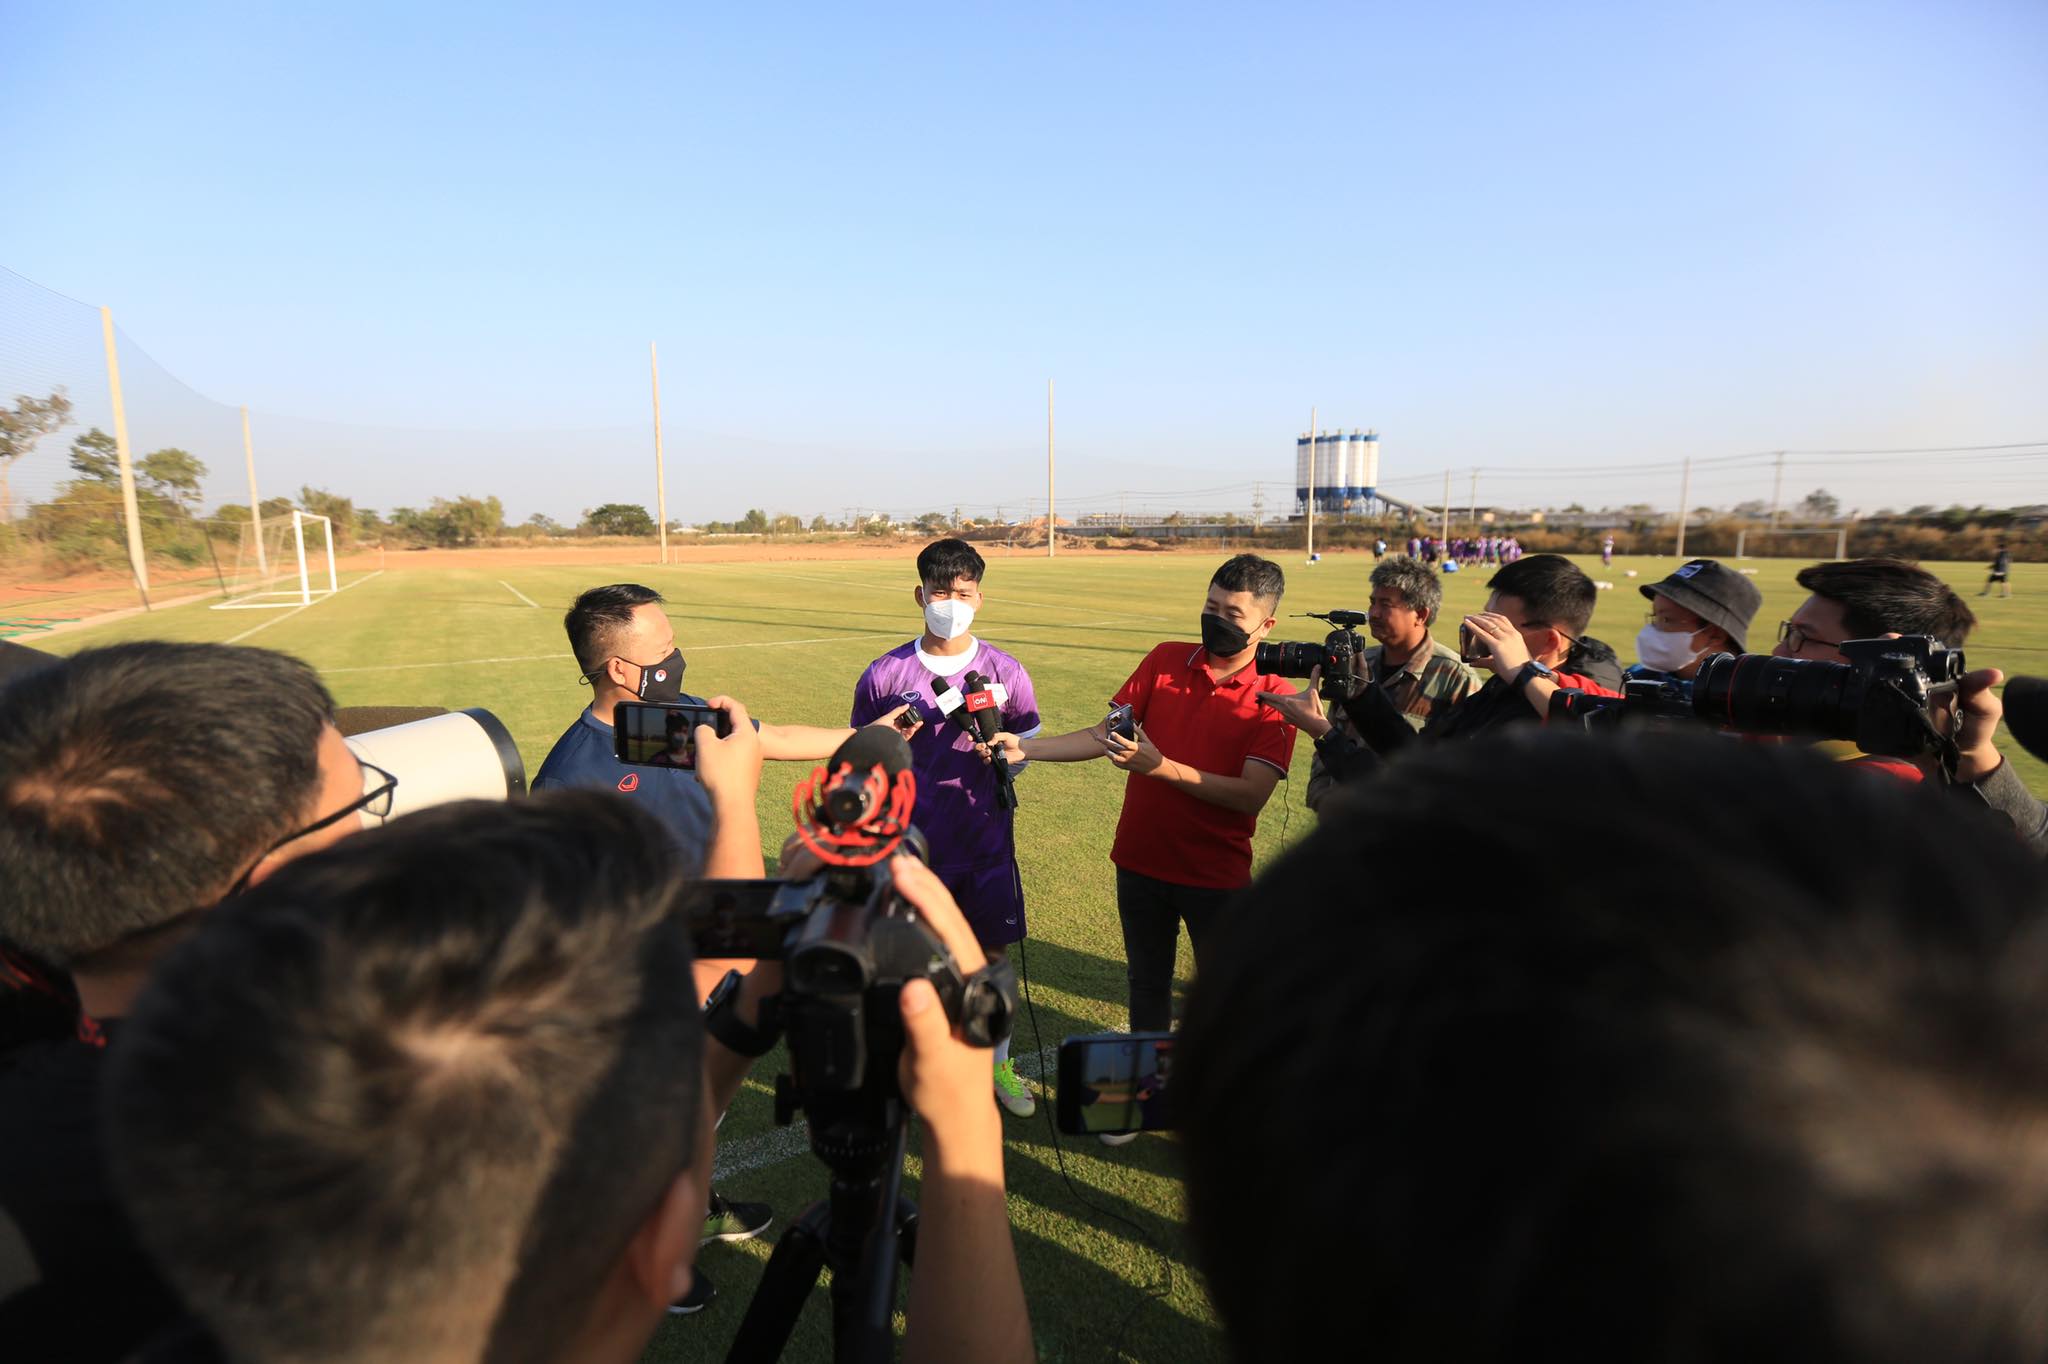 Văn Thanh cùng các đồng đội được xem thoải mái trận chung kết World Cup 2022 tại Lào - Ảnh: Minh Tuấn 